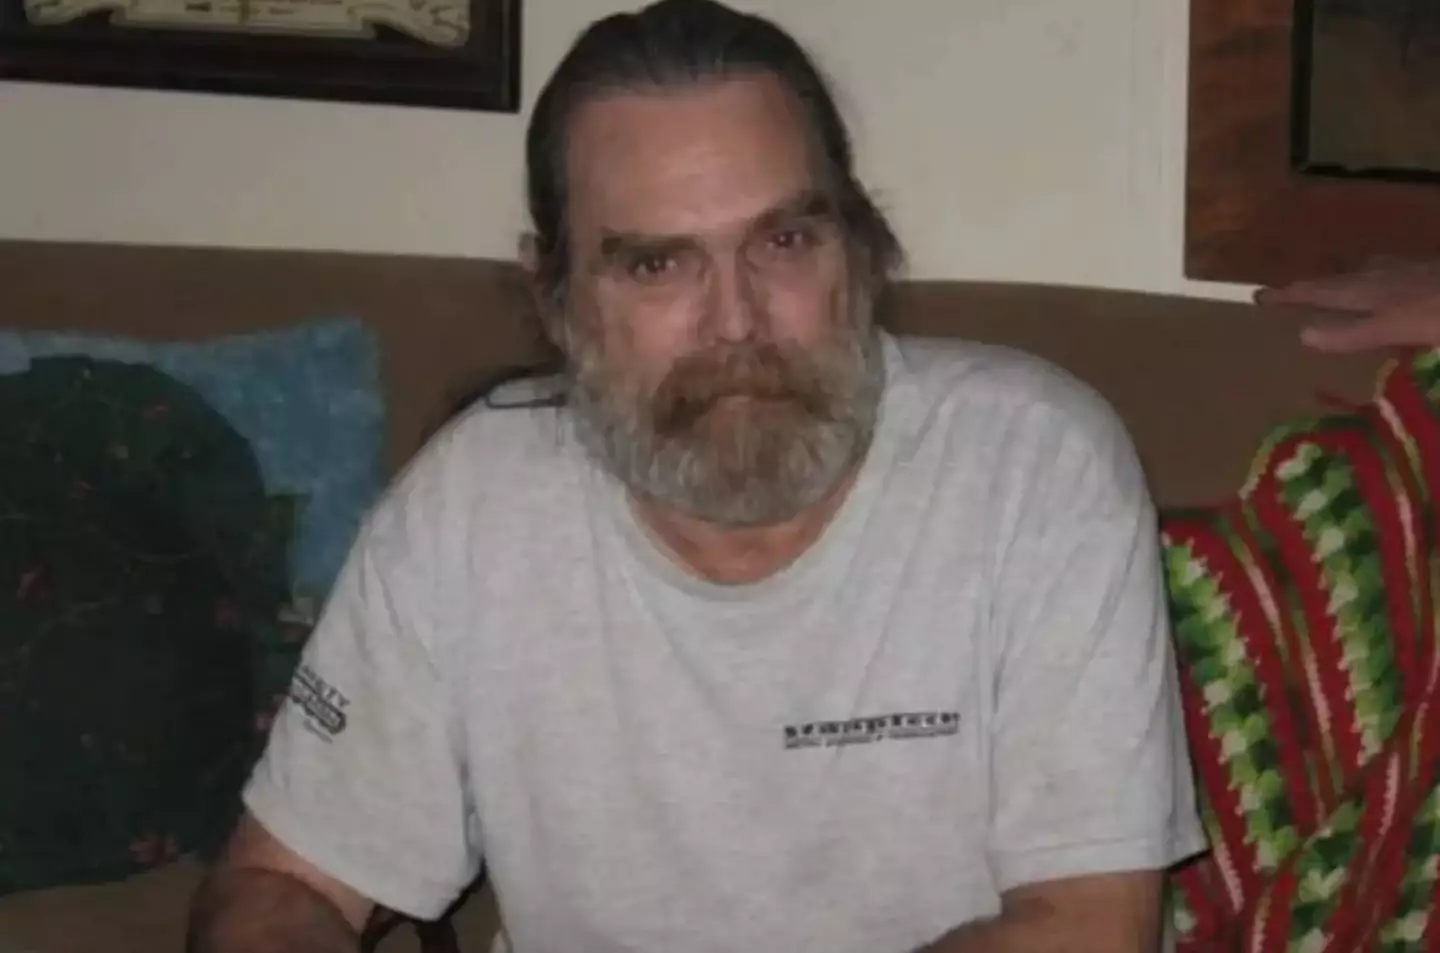 Missouri veteran Donnie Erwin went missing on December 29, 2013.